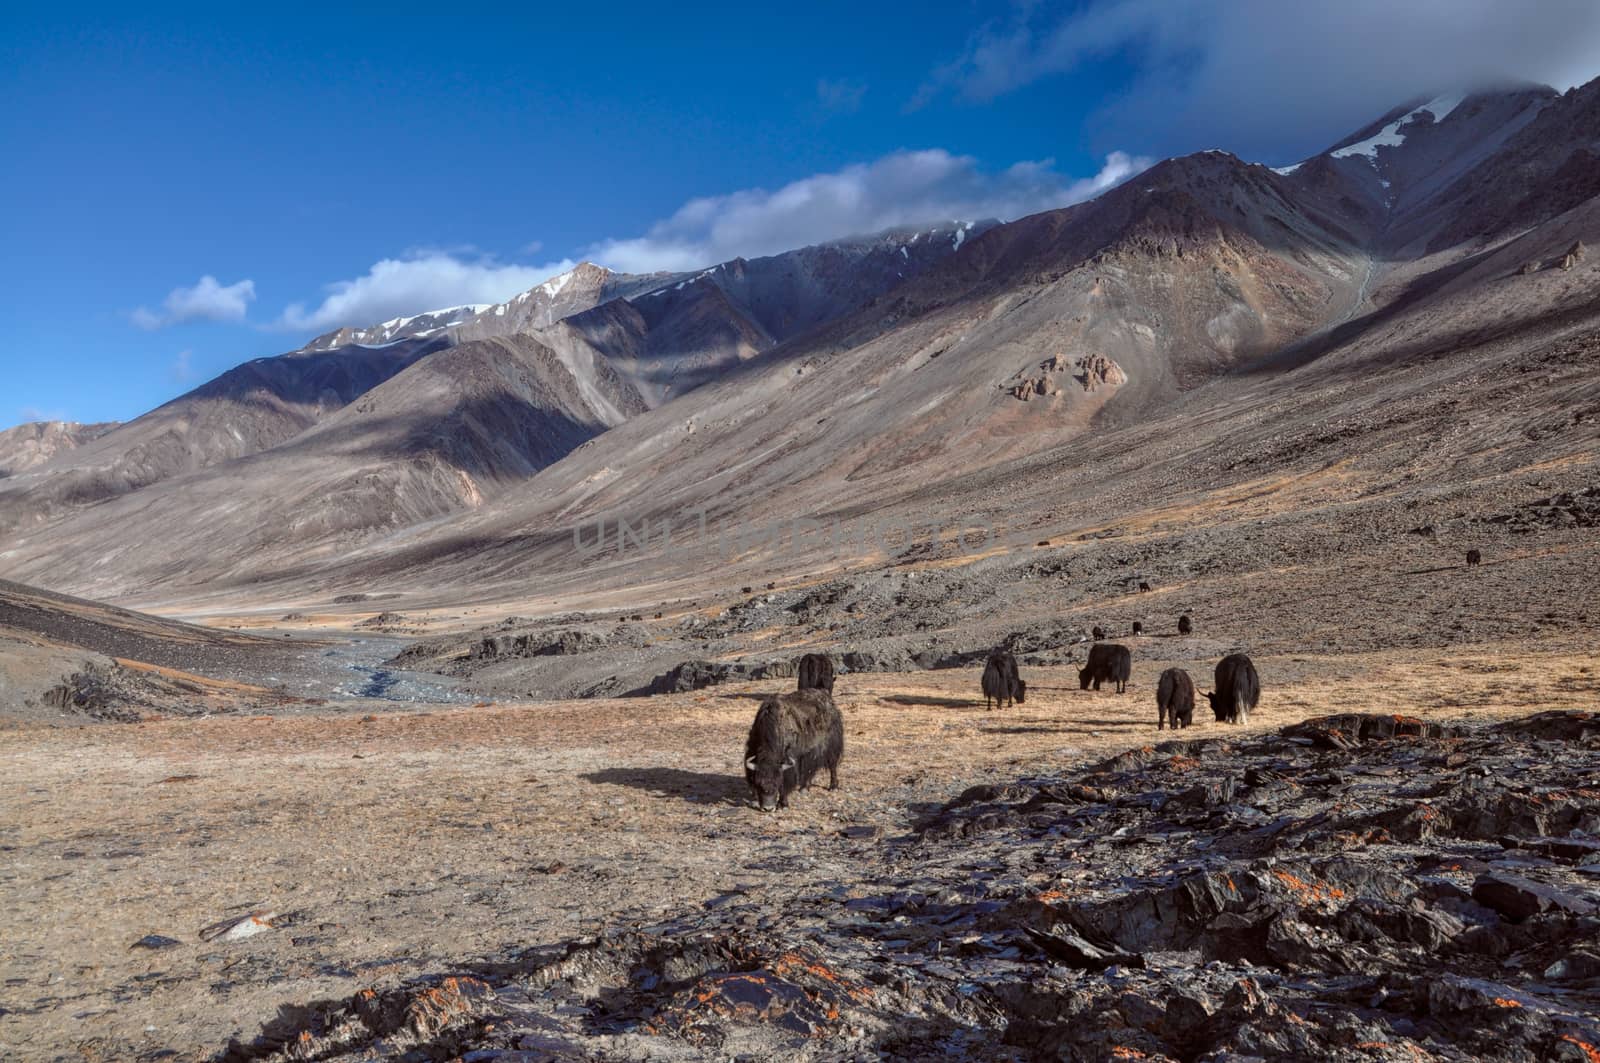 Herd of yaks in scenic Pamir mountains in Tajikistan